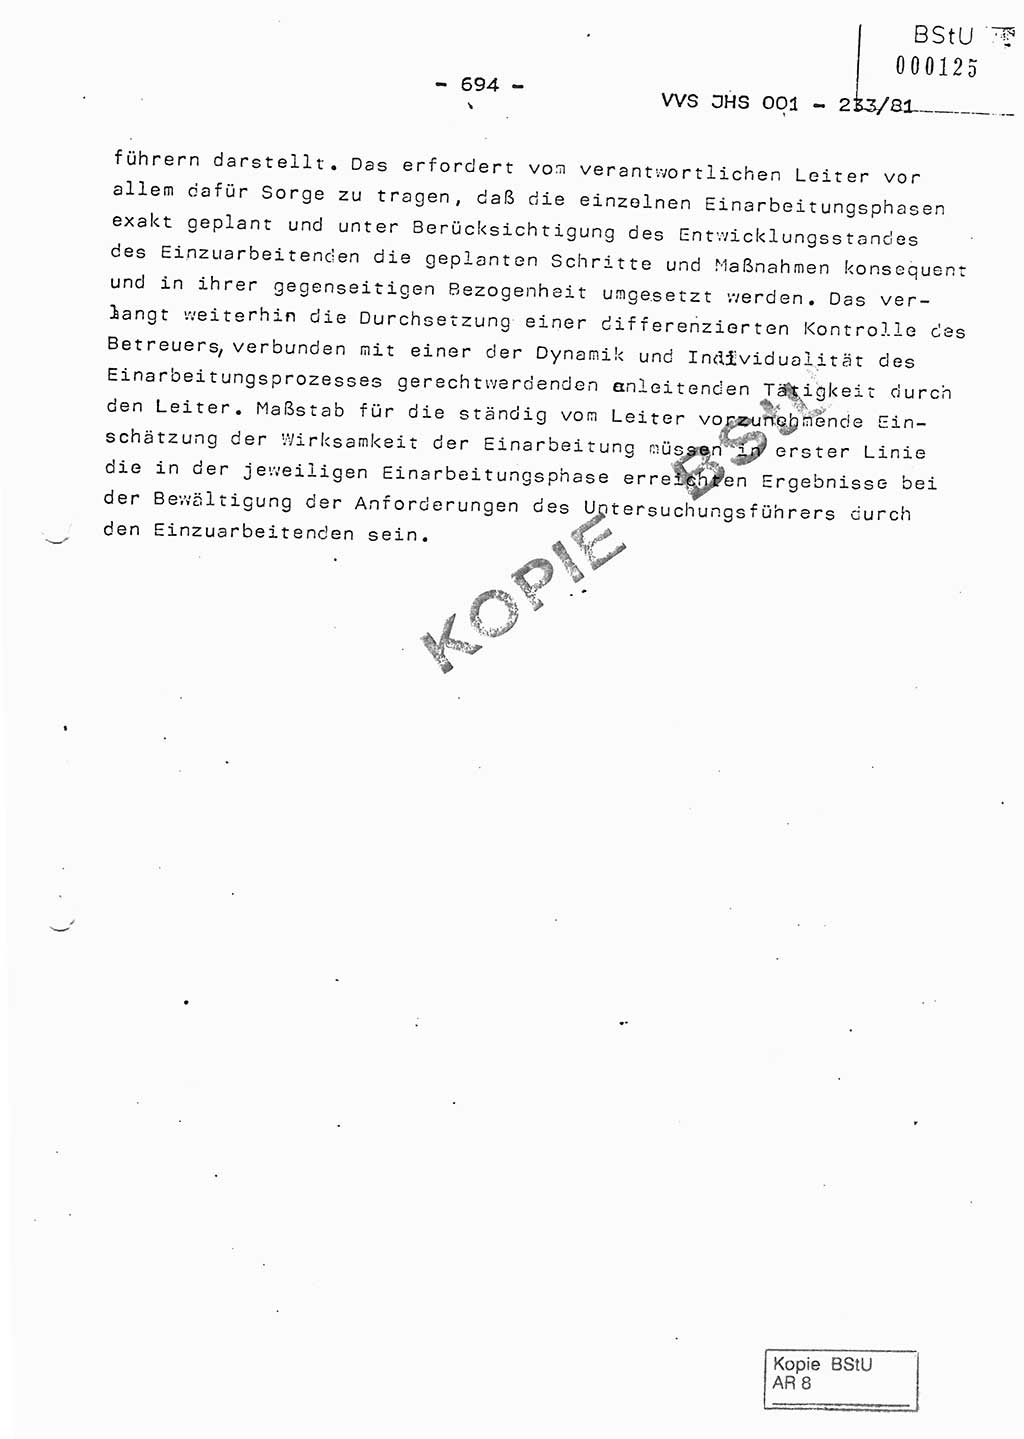 Dissertation Oberstleutnant Horst Zank (JHS), Oberstleutnant Dr. Karl-Heinz Knoblauch (JHS), Oberstleutnant Gustav-Adolf Kowalewski (HA Ⅸ), Oberstleutnant Wolfgang Plötner (HA Ⅸ), Ministerium für Staatssicherheit (MfS) [Deutsche Demokratische Republik (DDR)], Juristische Hochschule (JHS), Vertrauliche Verschlußsache (VVS) o001-233/81, Potsdam 1981, Blatt 694 (Diss. MfS DDR JHS VVS o001-233/81 1981, Bl. 694)